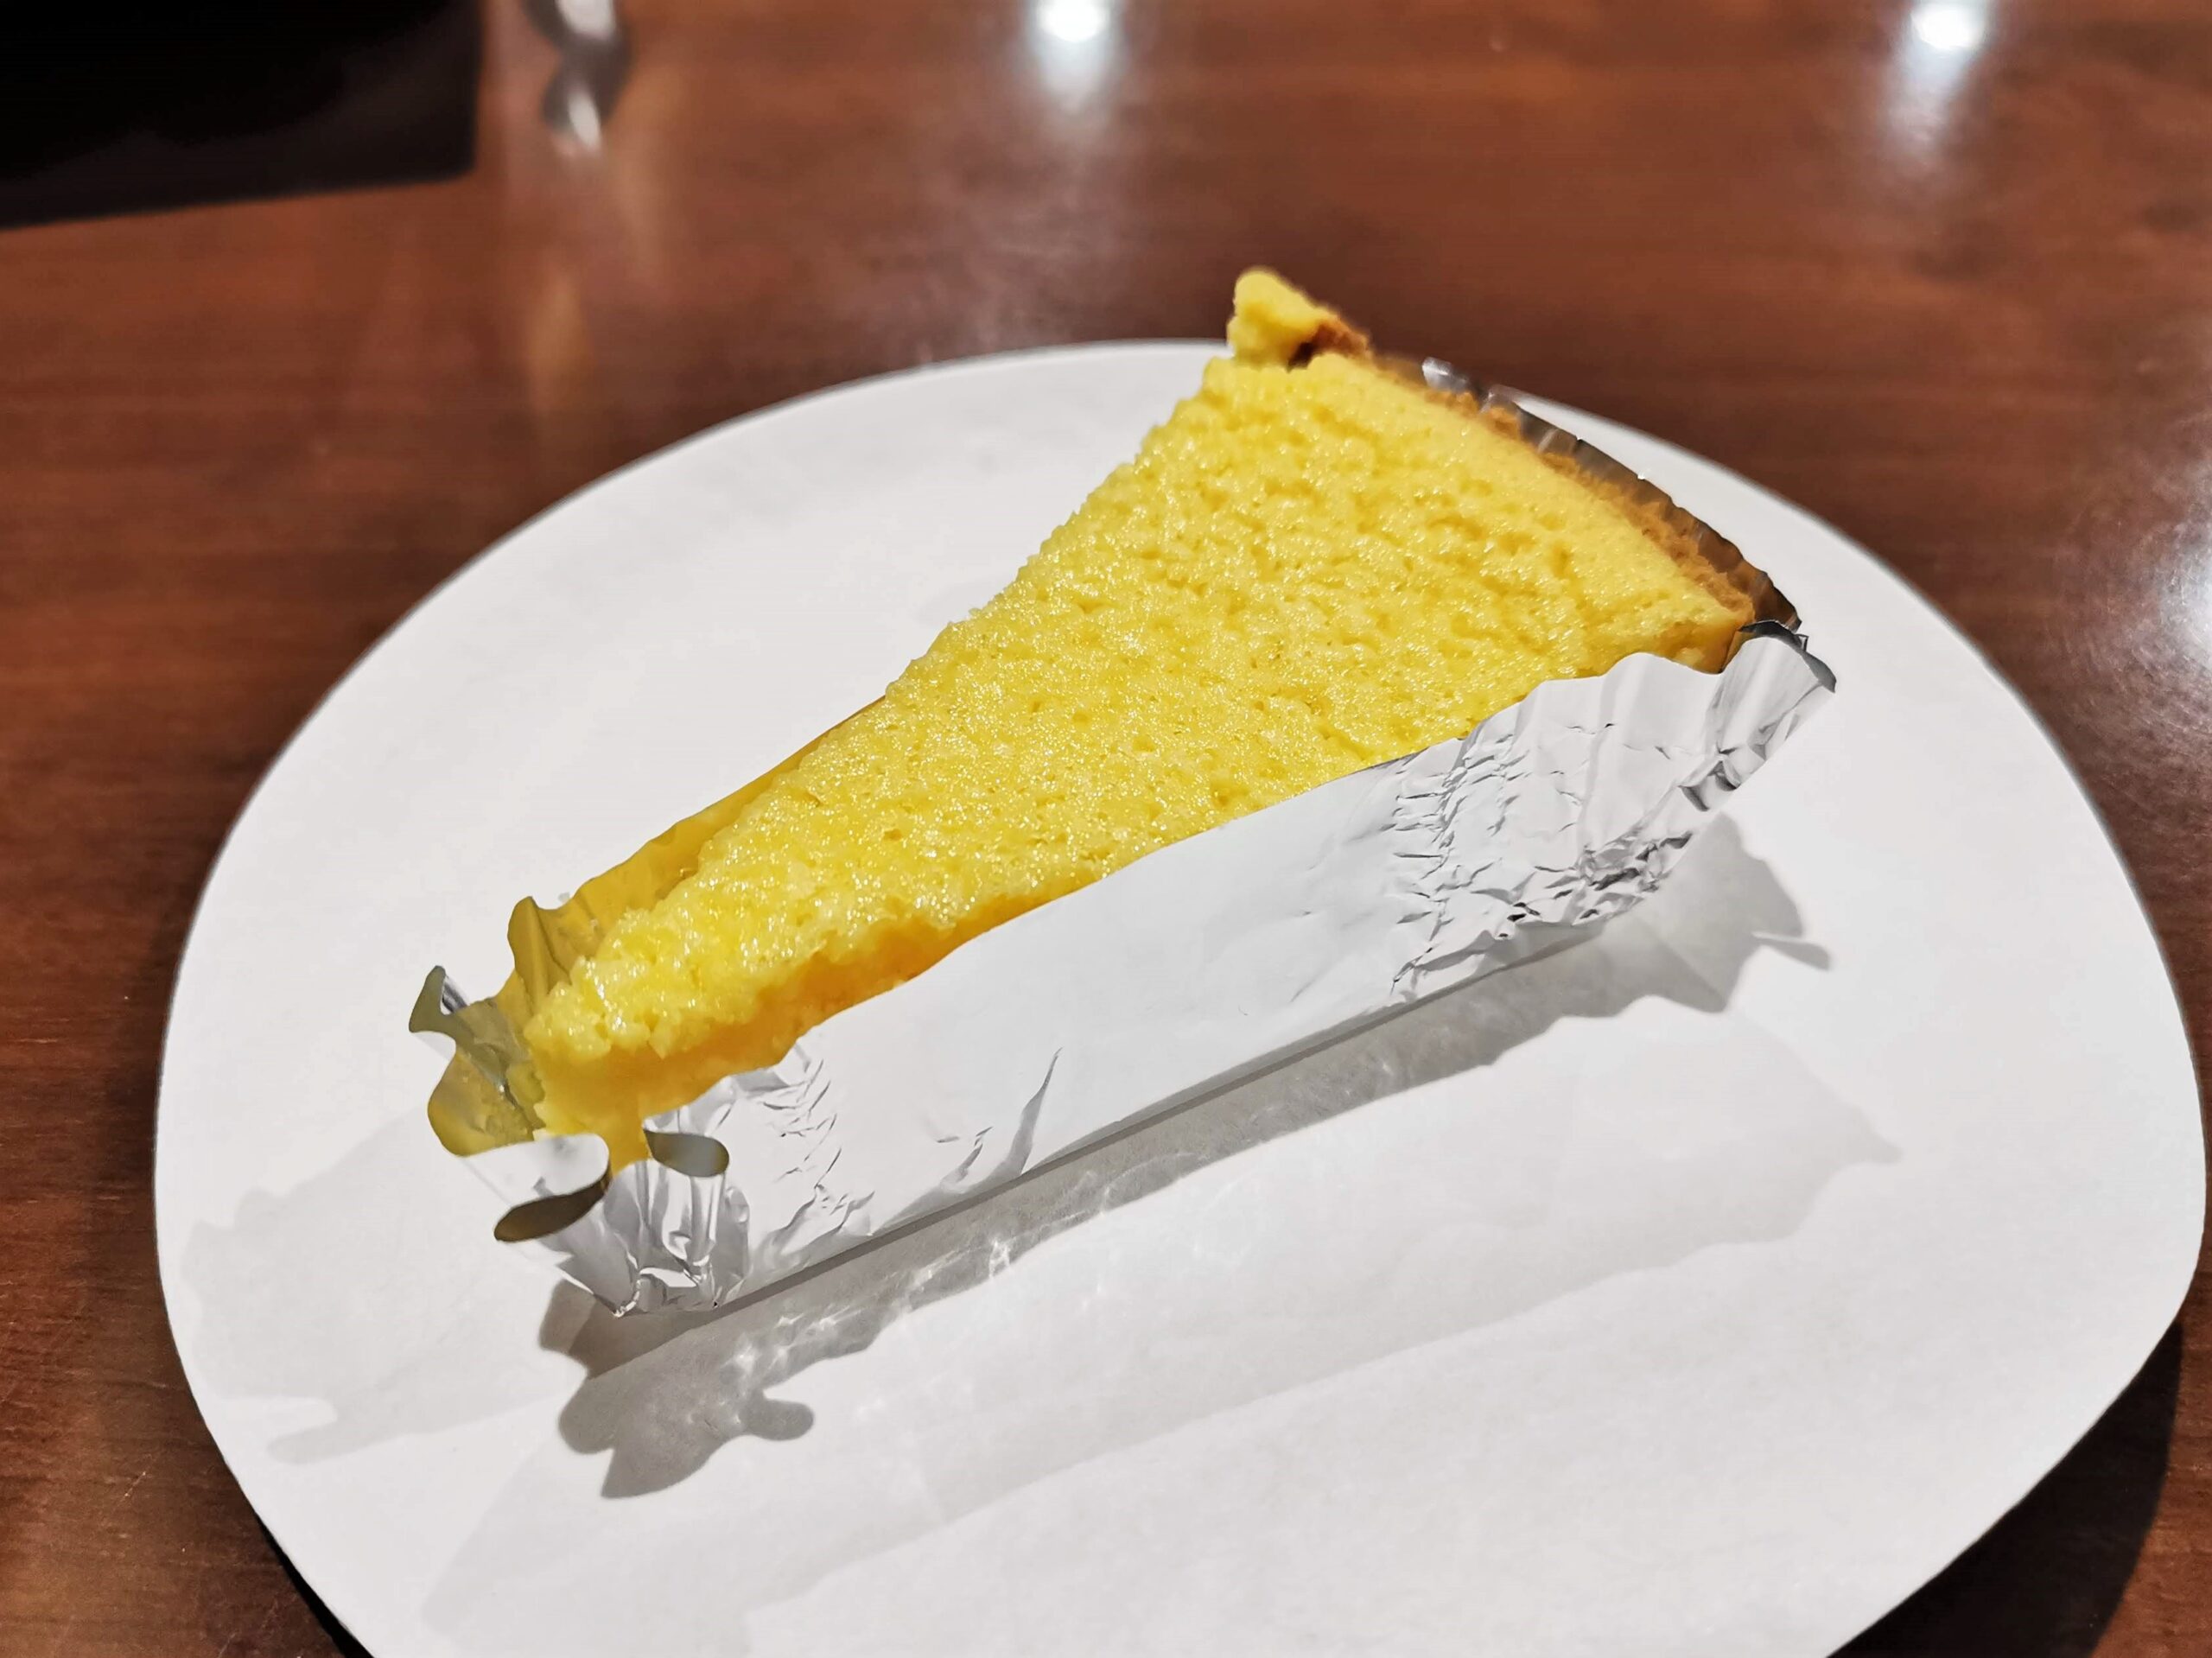 中野「カイルズ・グッド・ファインズ(アメリカンケーキ)」 のチーズケーキの写真 (2)